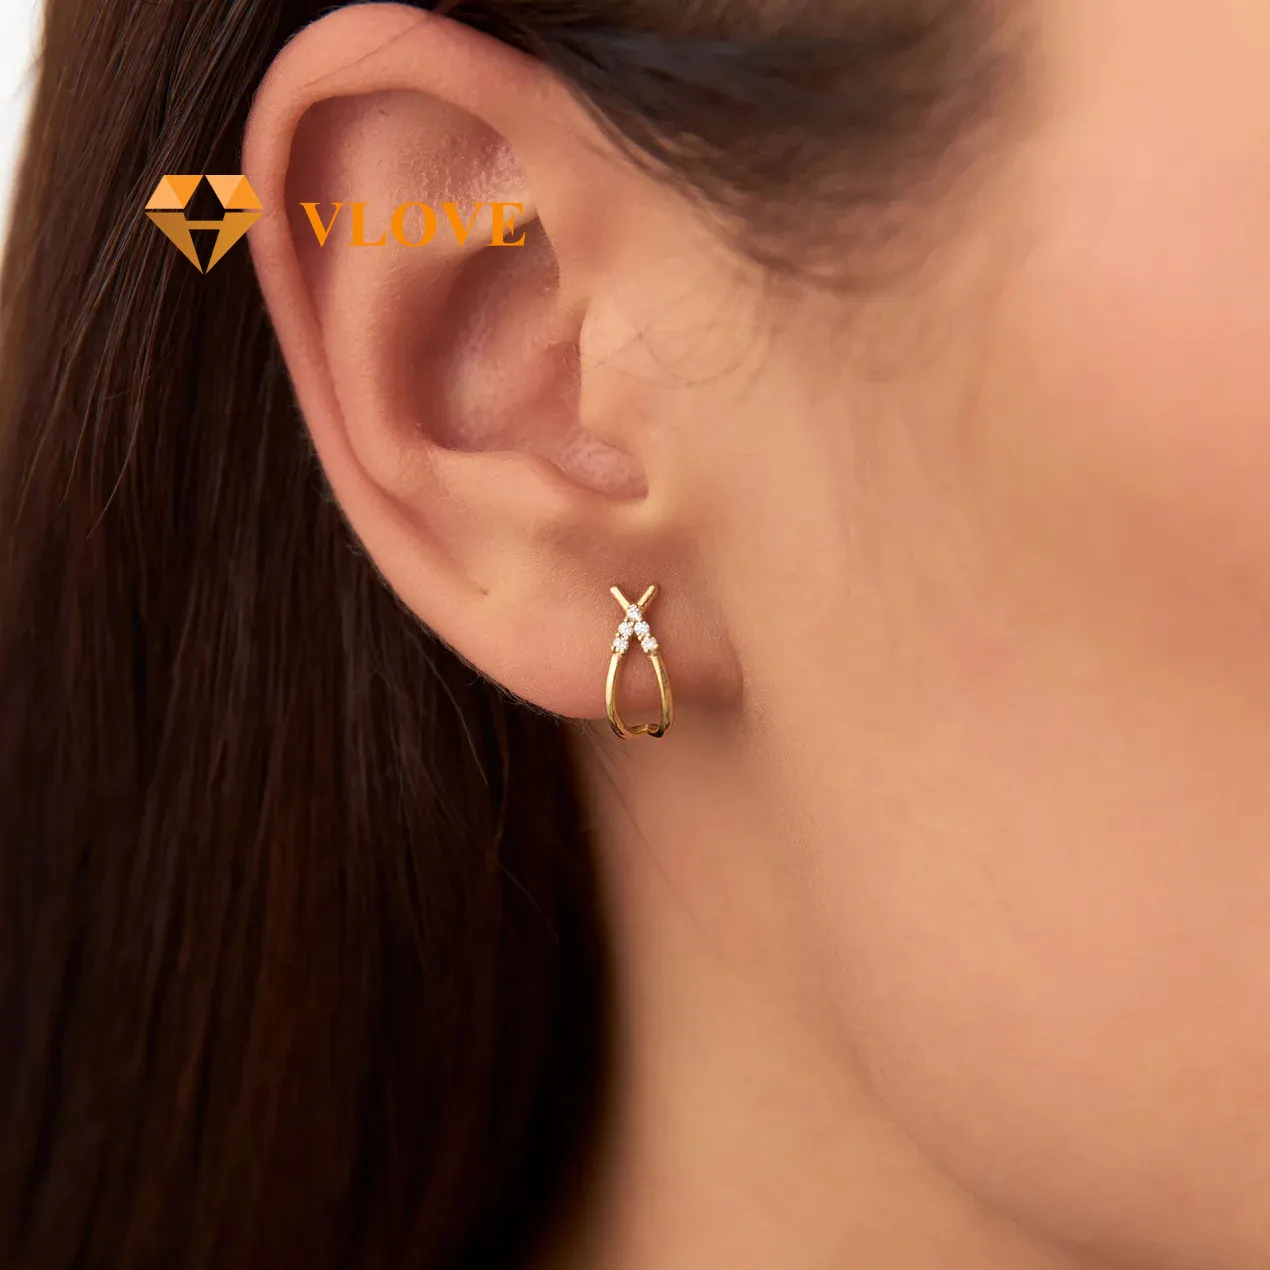 VLOVE Women Luxury Jewelry Solid Gold Jewelry 14k CrissCross Half Hoop Diamond Stud Earrings